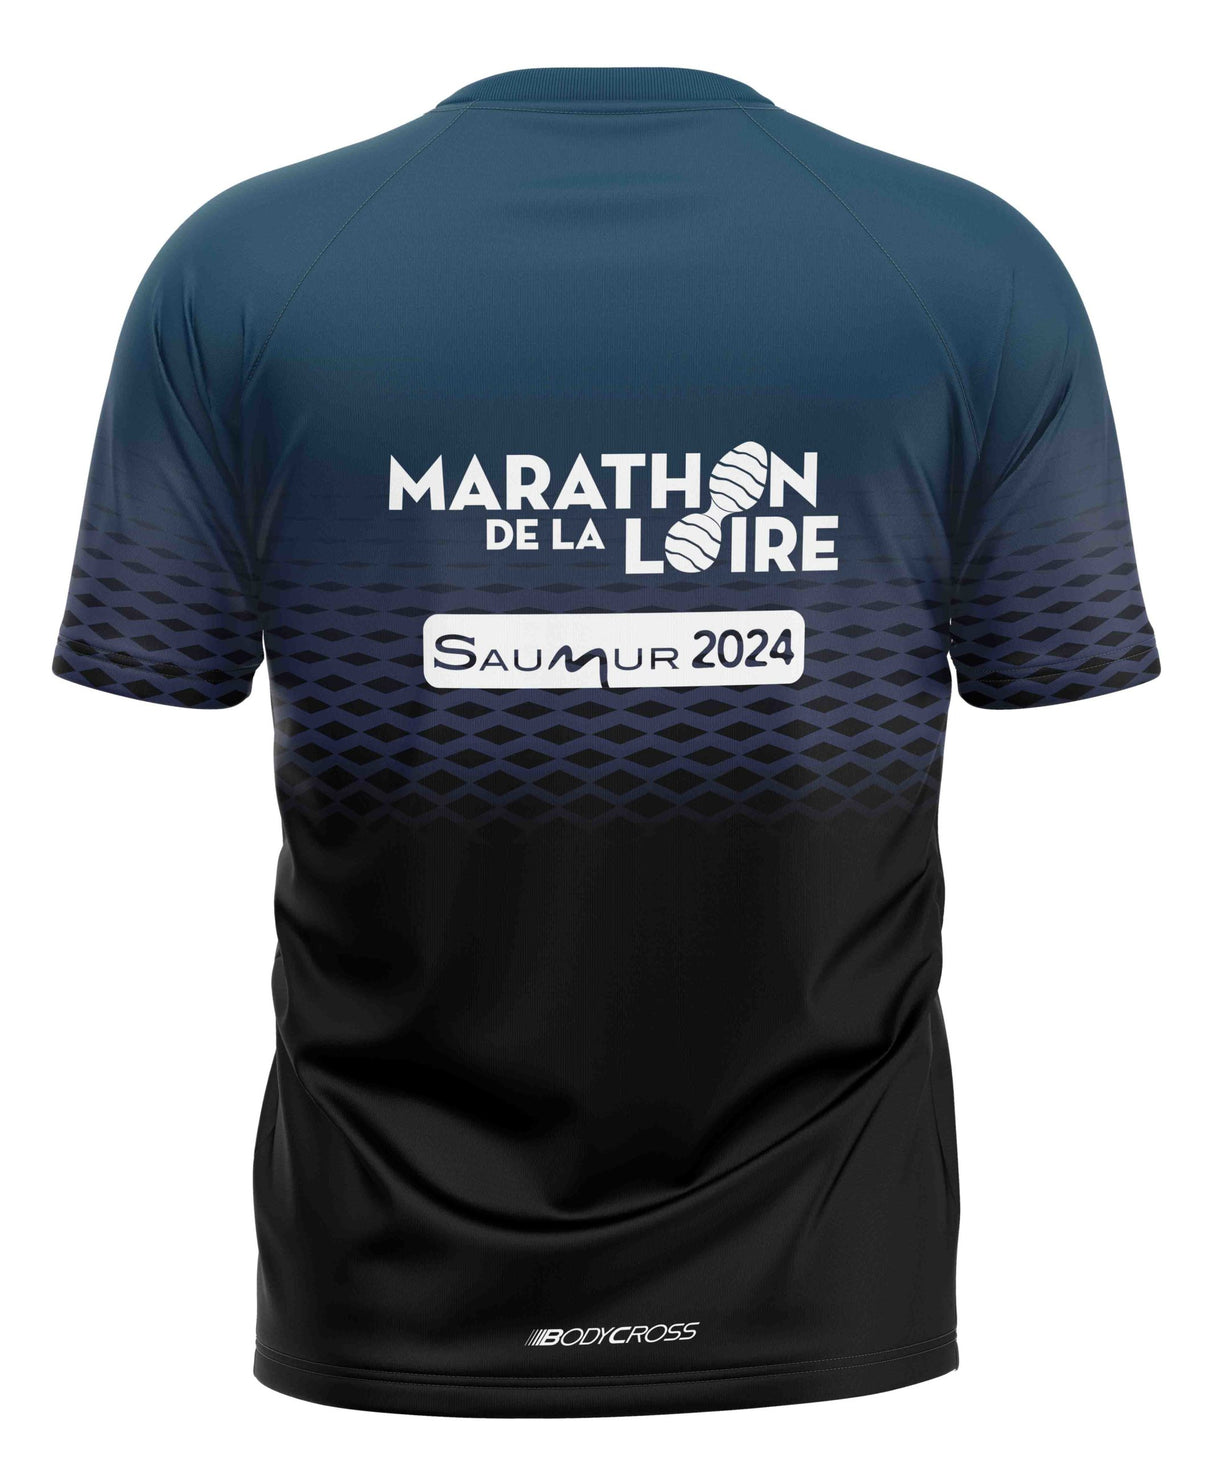 T-shirt Marathon de la Loire 2024 - Édition limitée